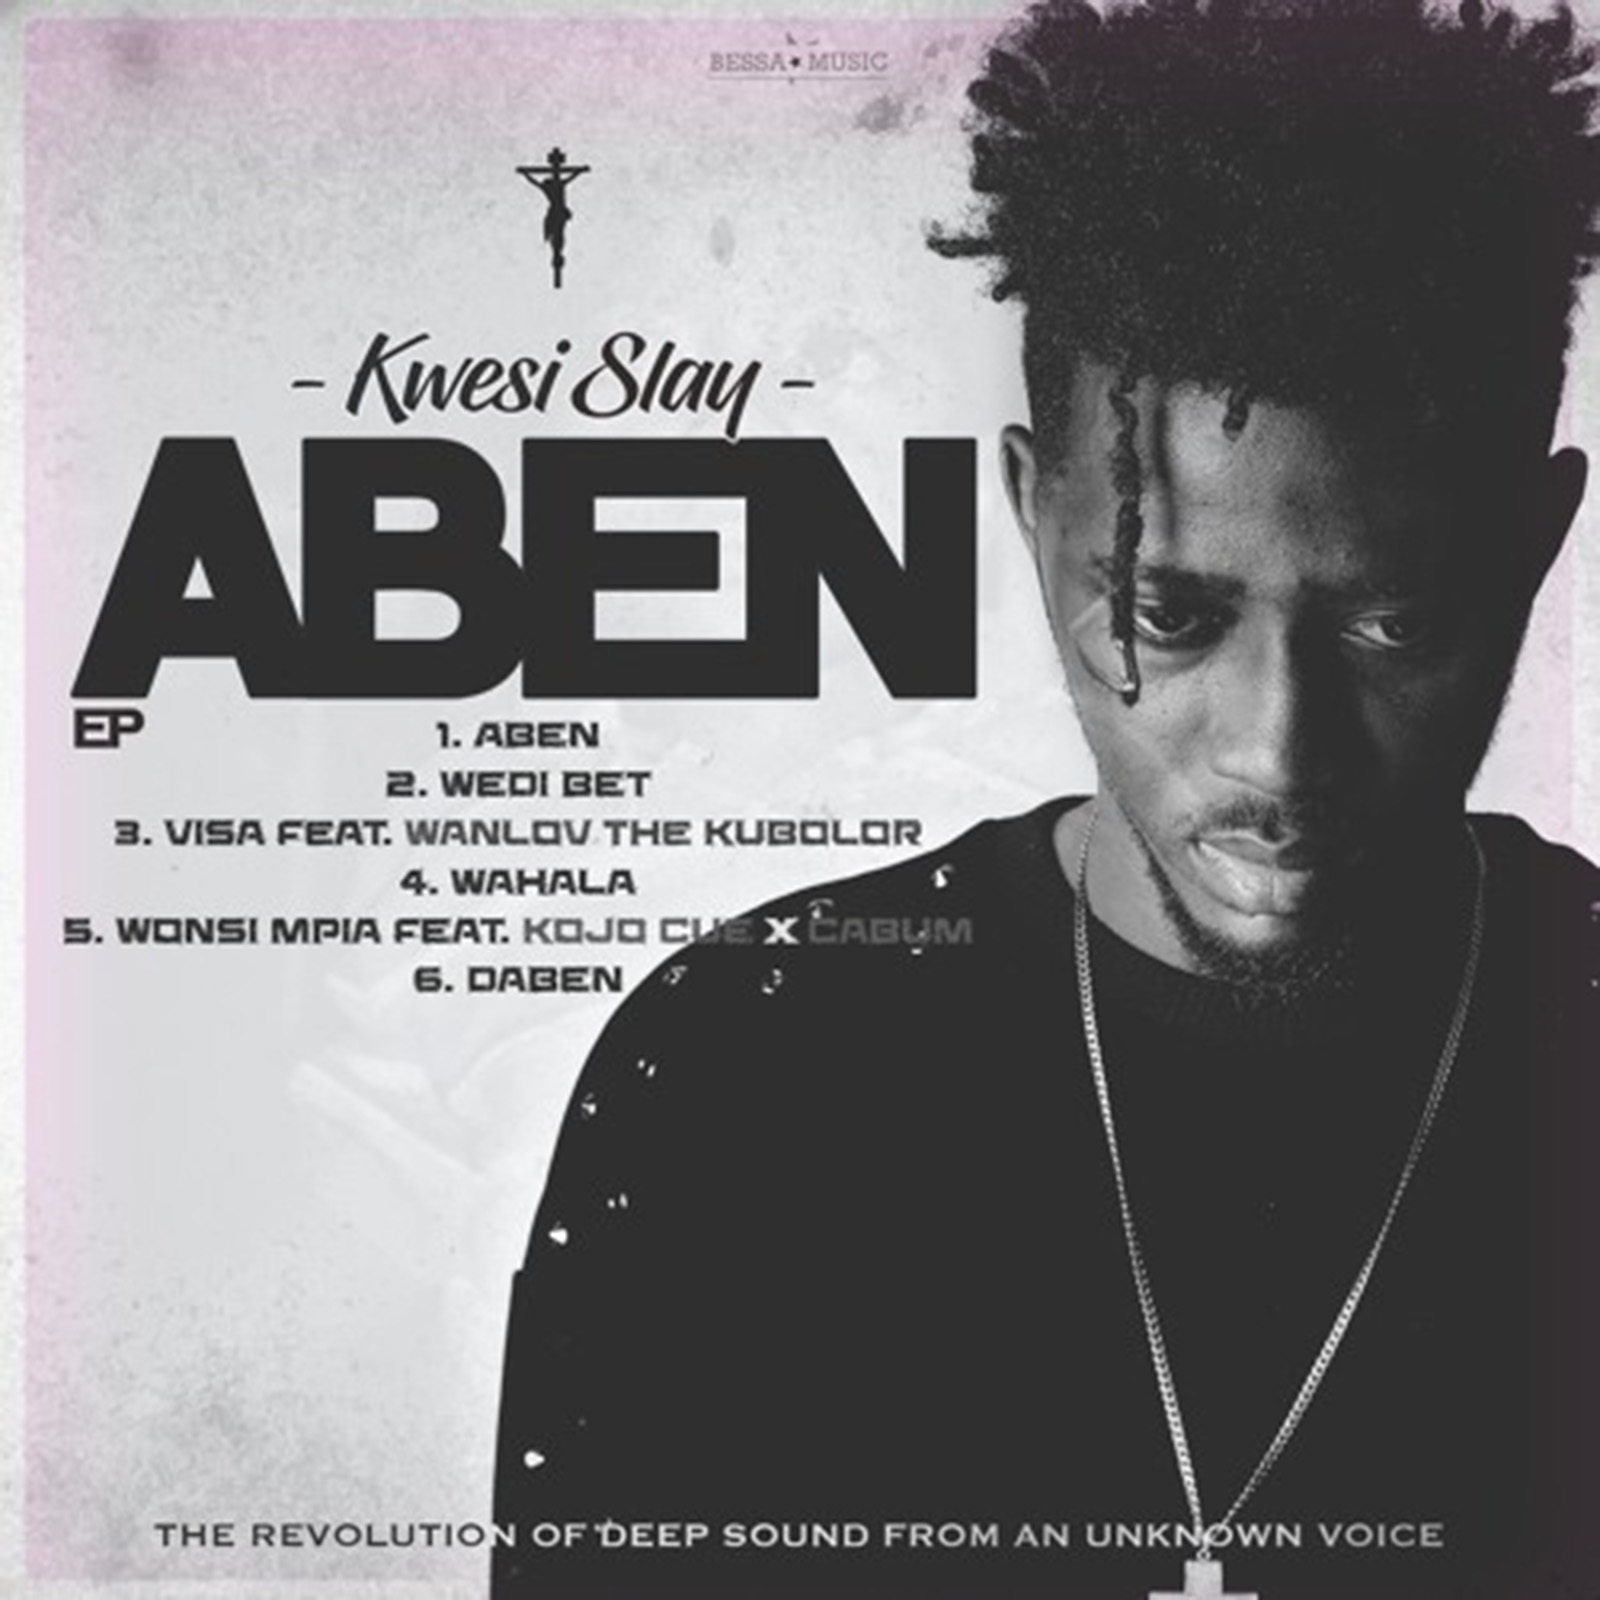 Aben EP by Kwesi Slay